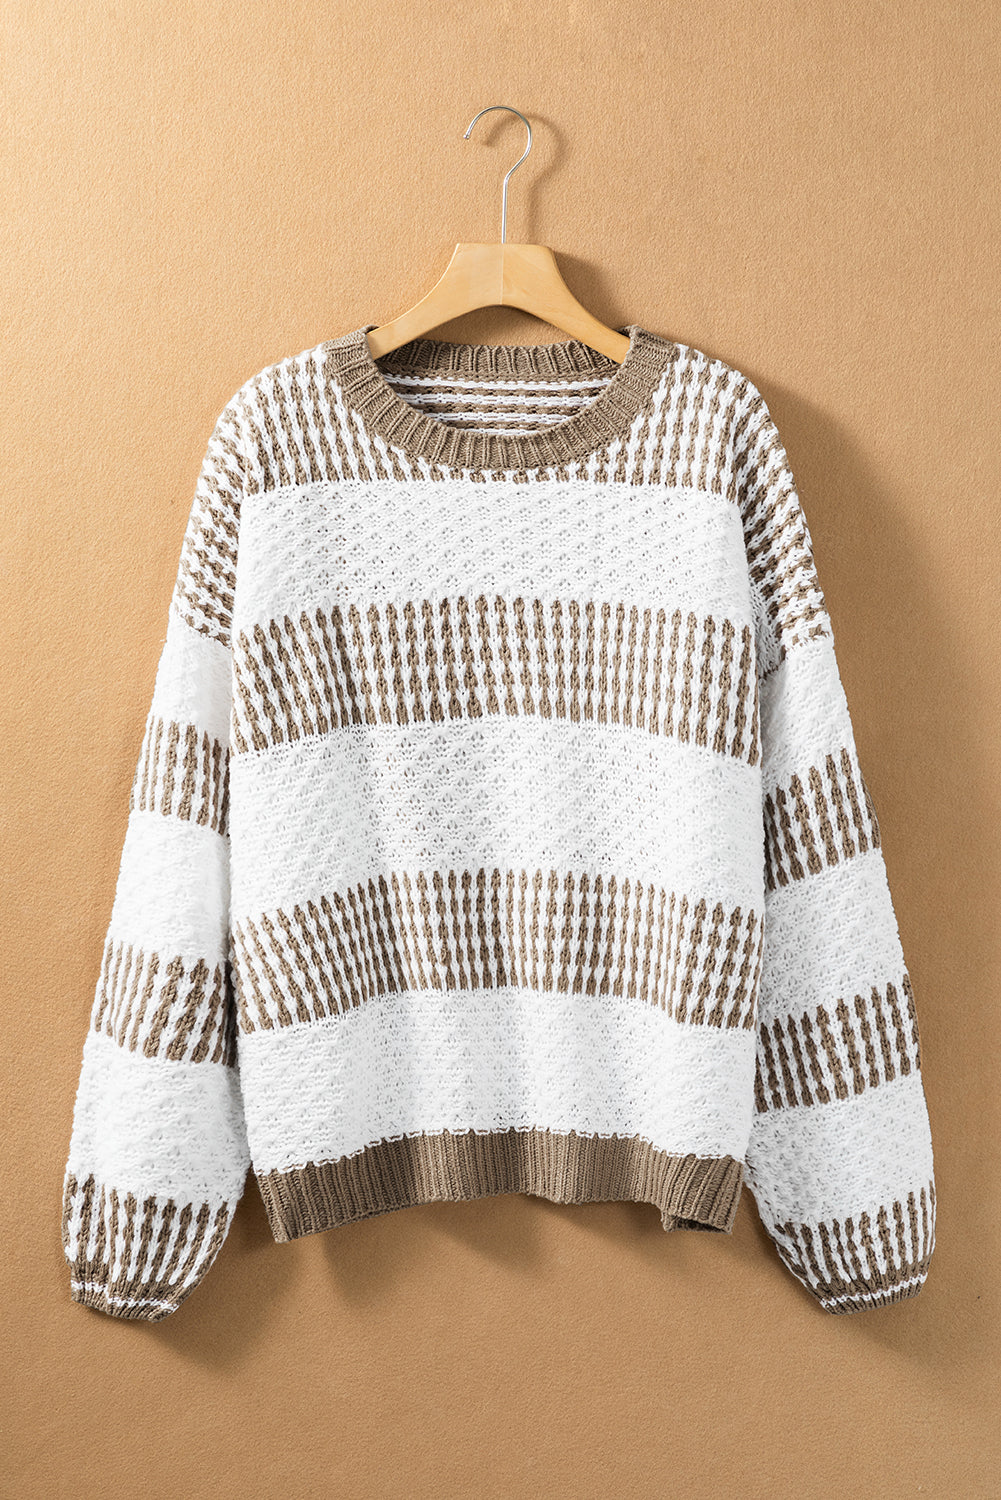 Multicolour Vertical Stripes Two Tones Drop Shoulder Sweater